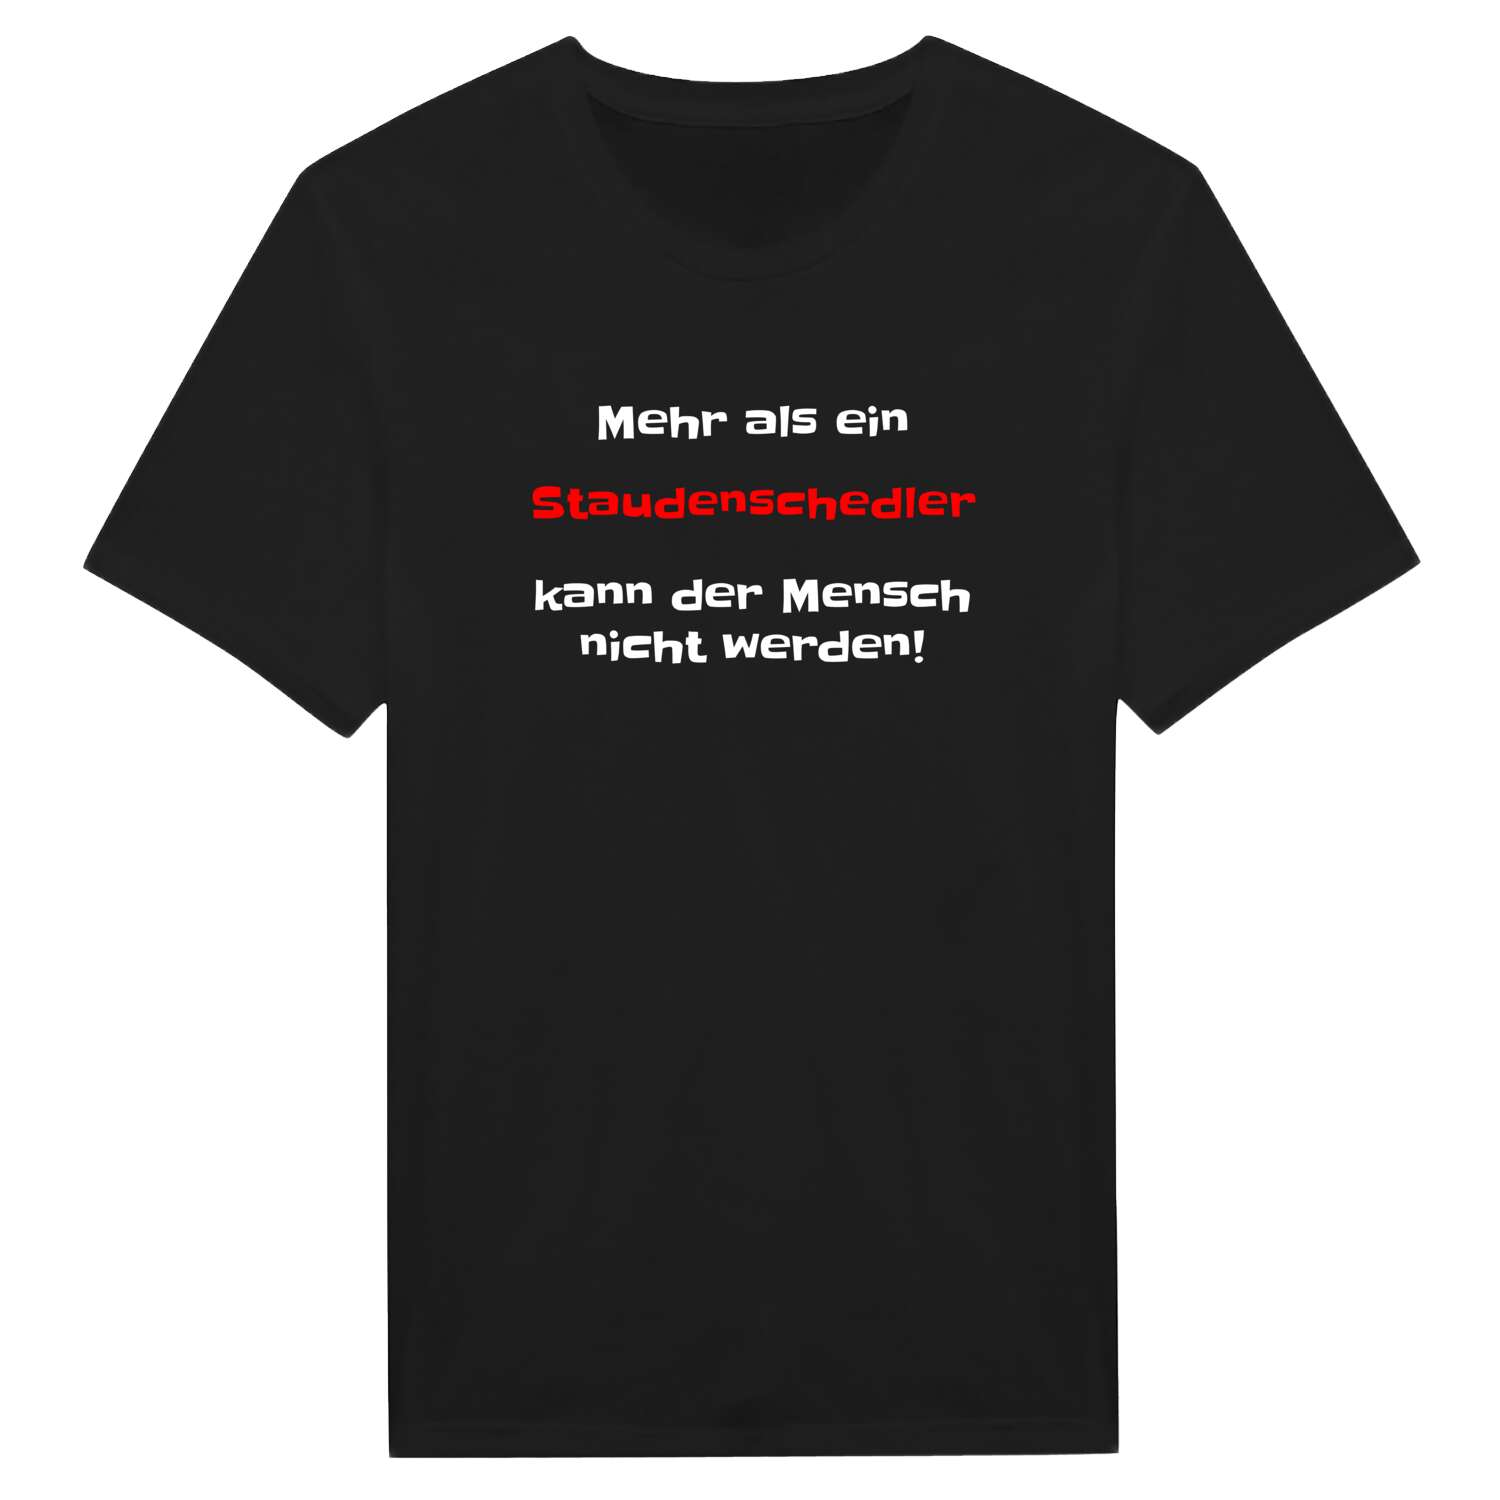 Staudenschedl T-Shirt »Mehr als ein«